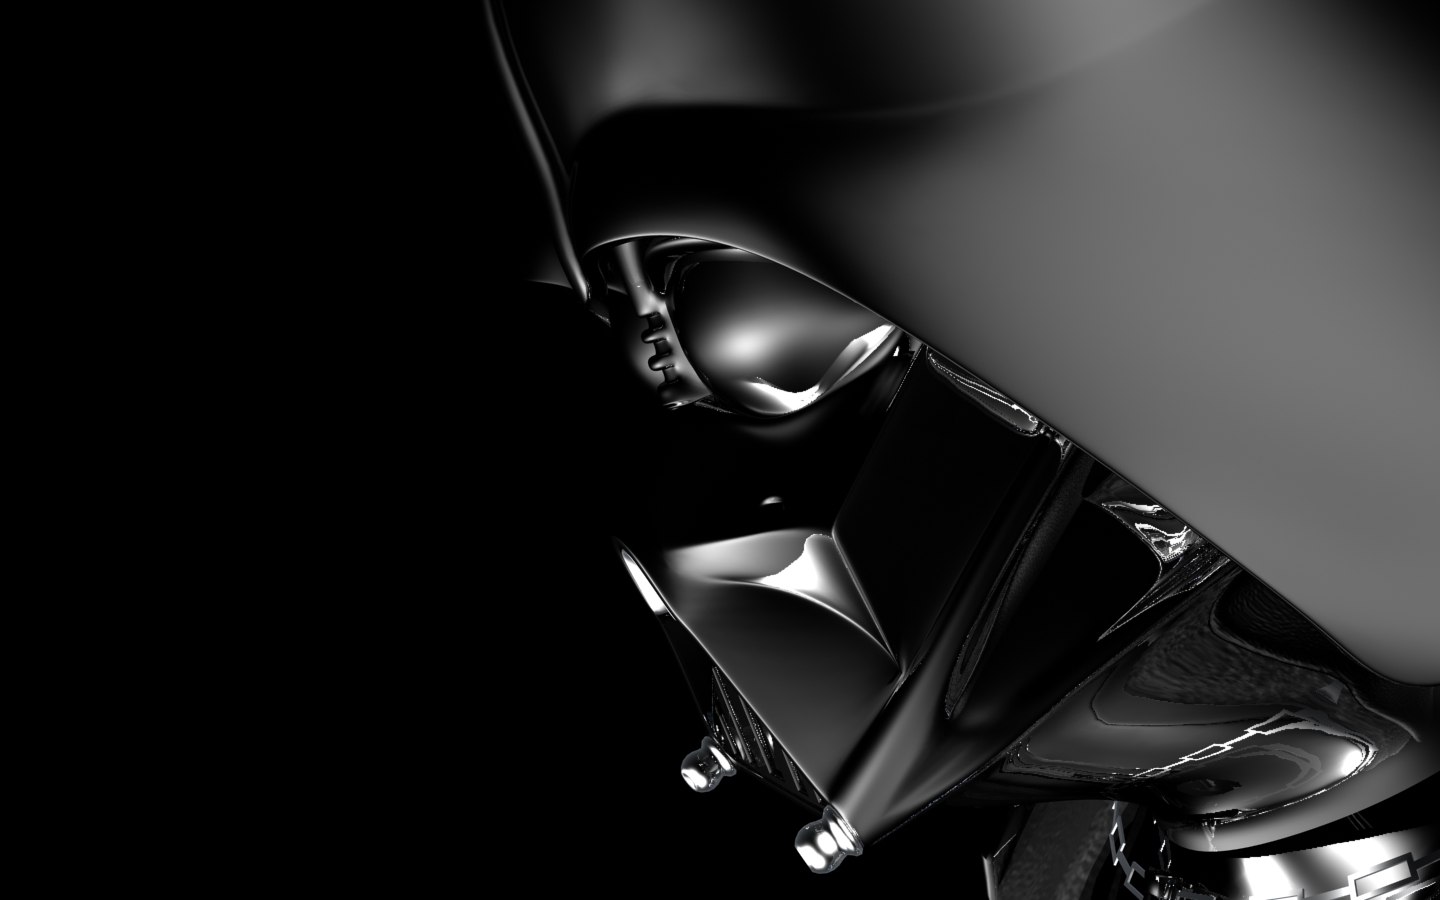 Darth Vader Image Reggie S Take